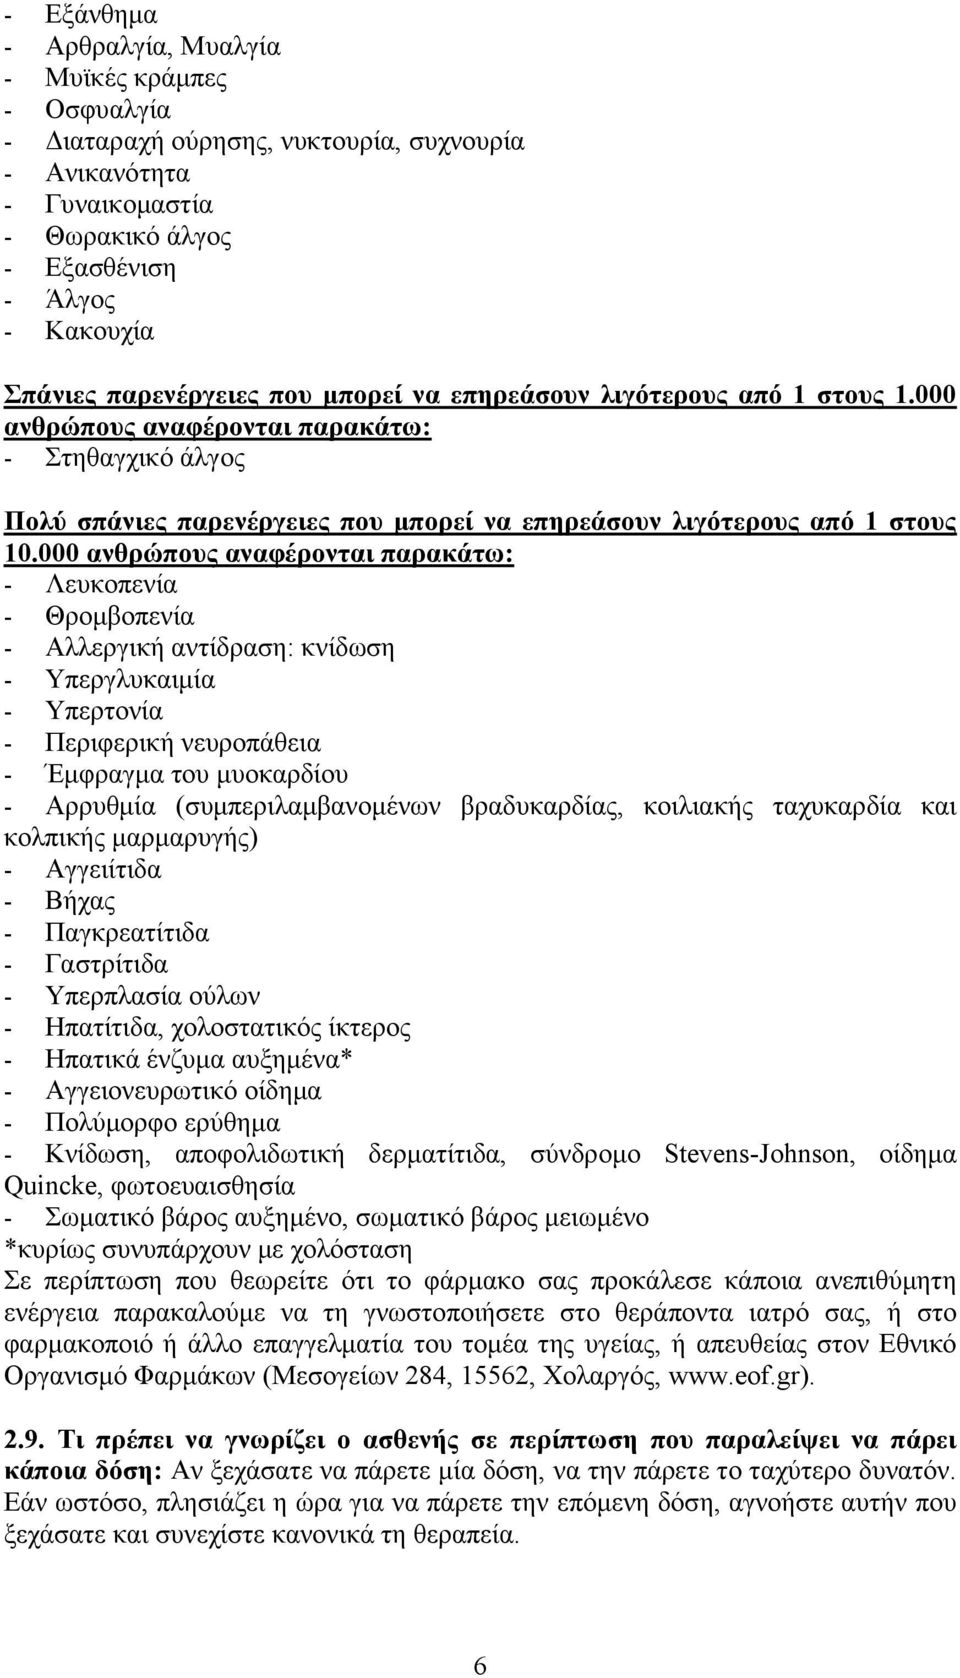 000 ανθρώπους αναφέρονται παρακάτω: - Λευκοπενία - Θρομβοπενία - Αλλεργική αντίδραση: κνίδωση - Υπεργλυκαιμία - Υπερτονία - Περιφερική νευροπάθεια - Έμφραγμα του μυοκαρδίου - Αρρυθμία